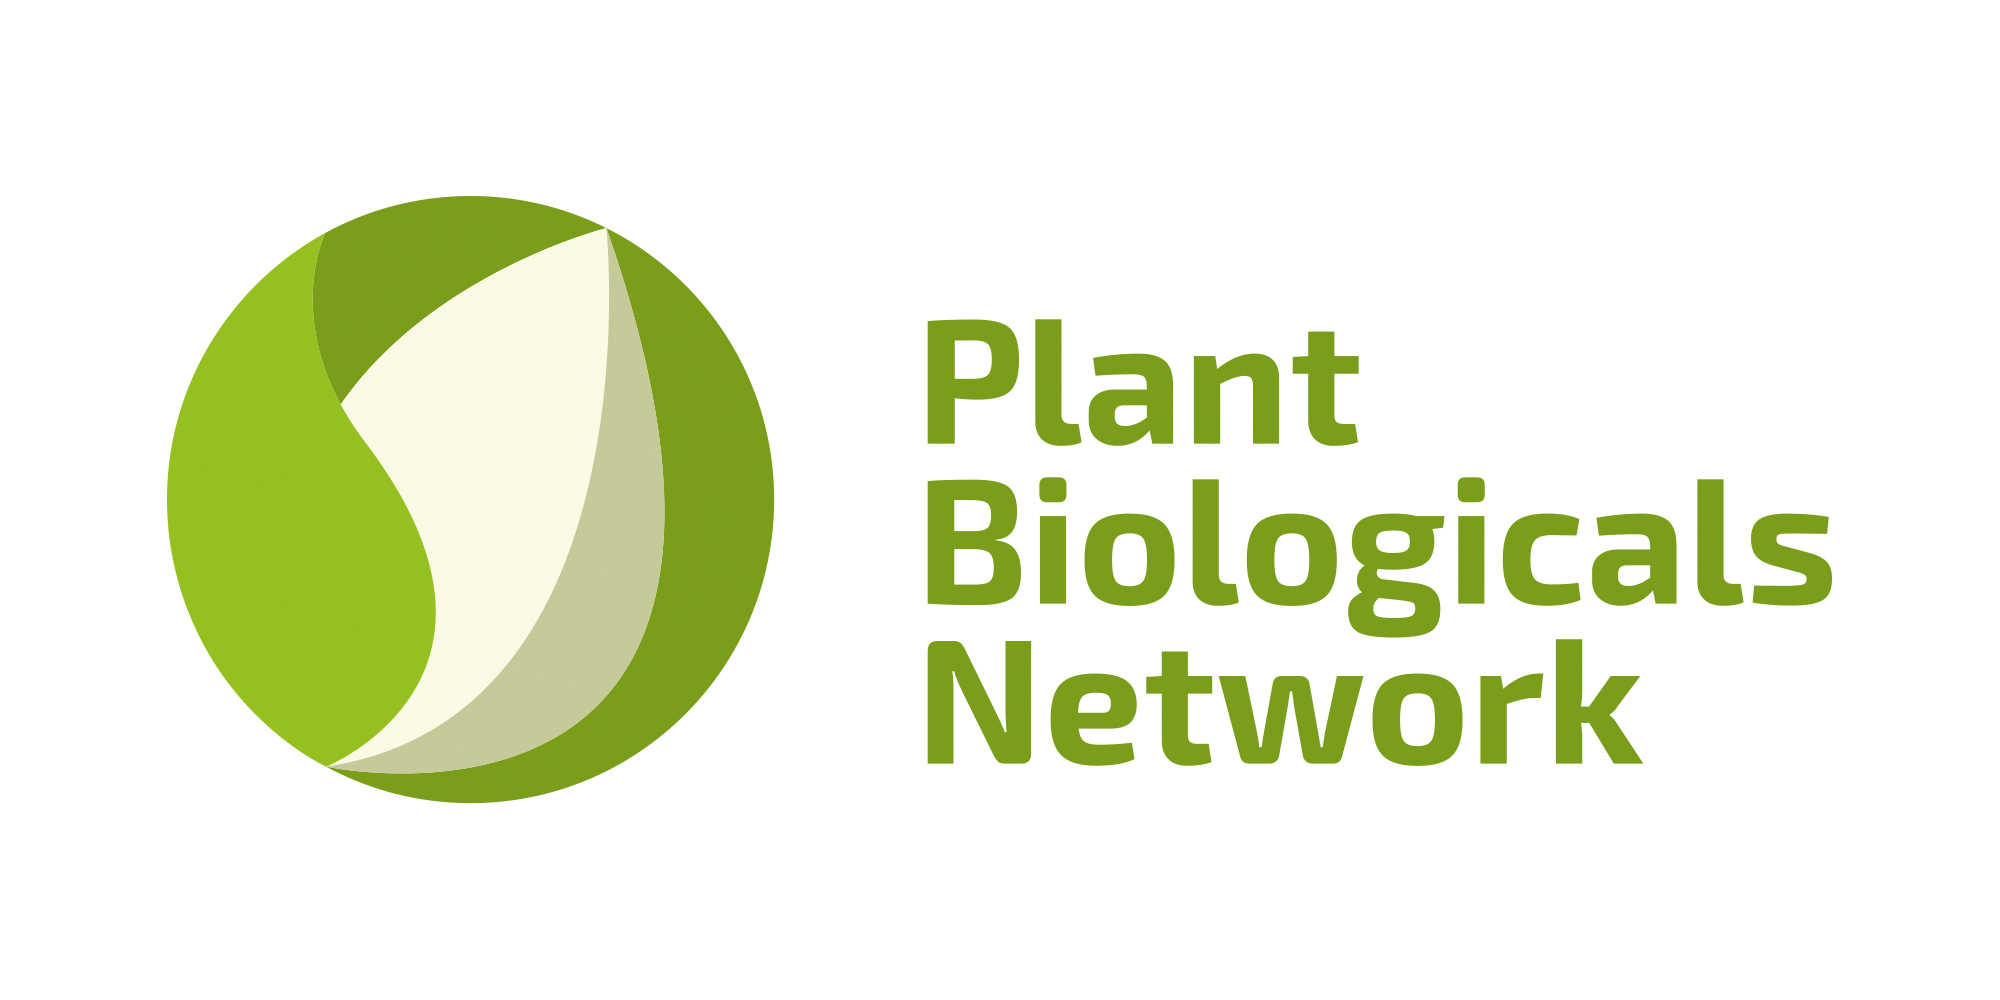 Plant Biologicals Network